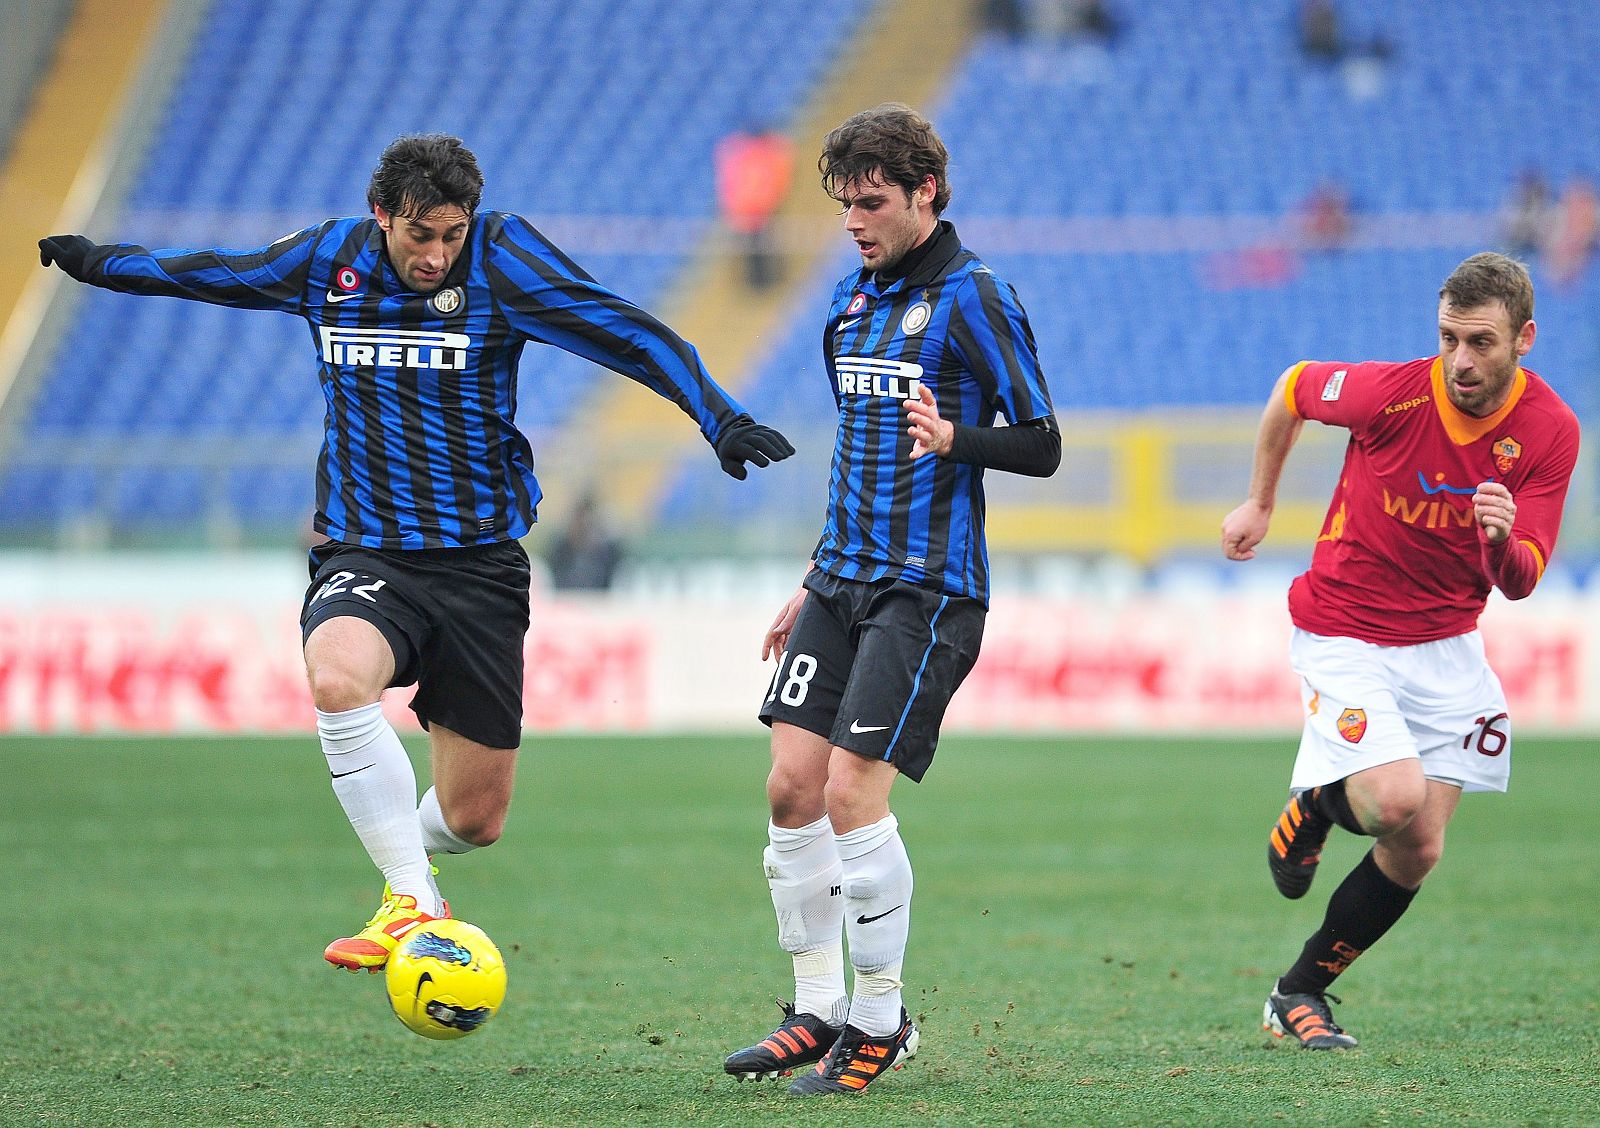 Los jugadores del Inter de Milan, Milito y Andrea Poli, durante un encuentro de la Serie A italiana.